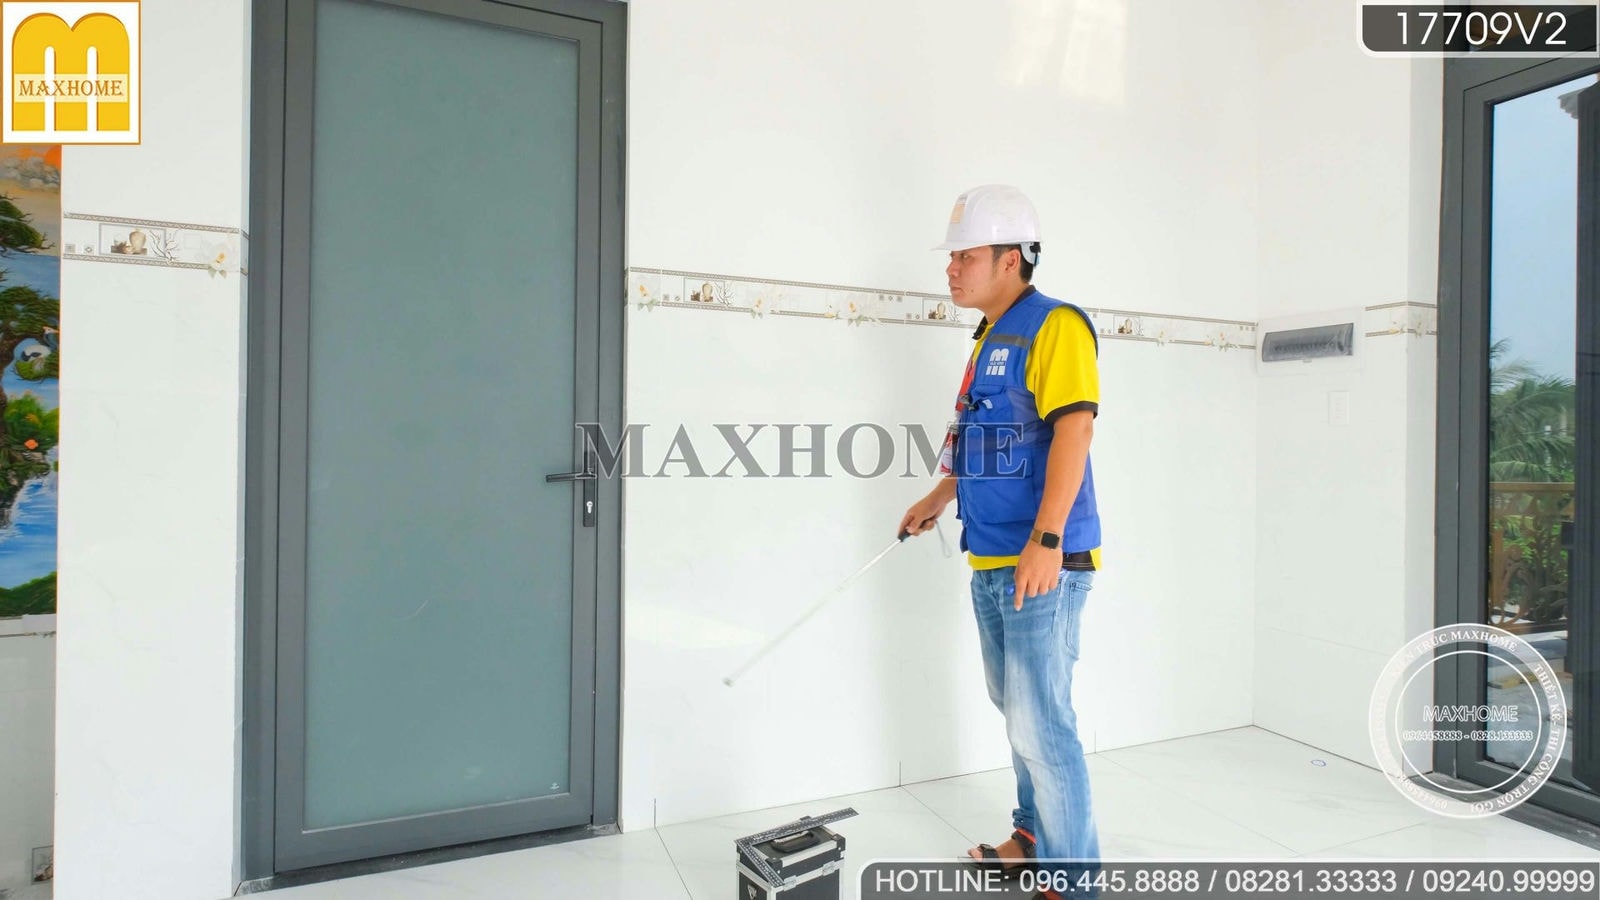 Maxhome kiểm tra chất lượng công trình nhà tân cổ mái Thái tại Long An